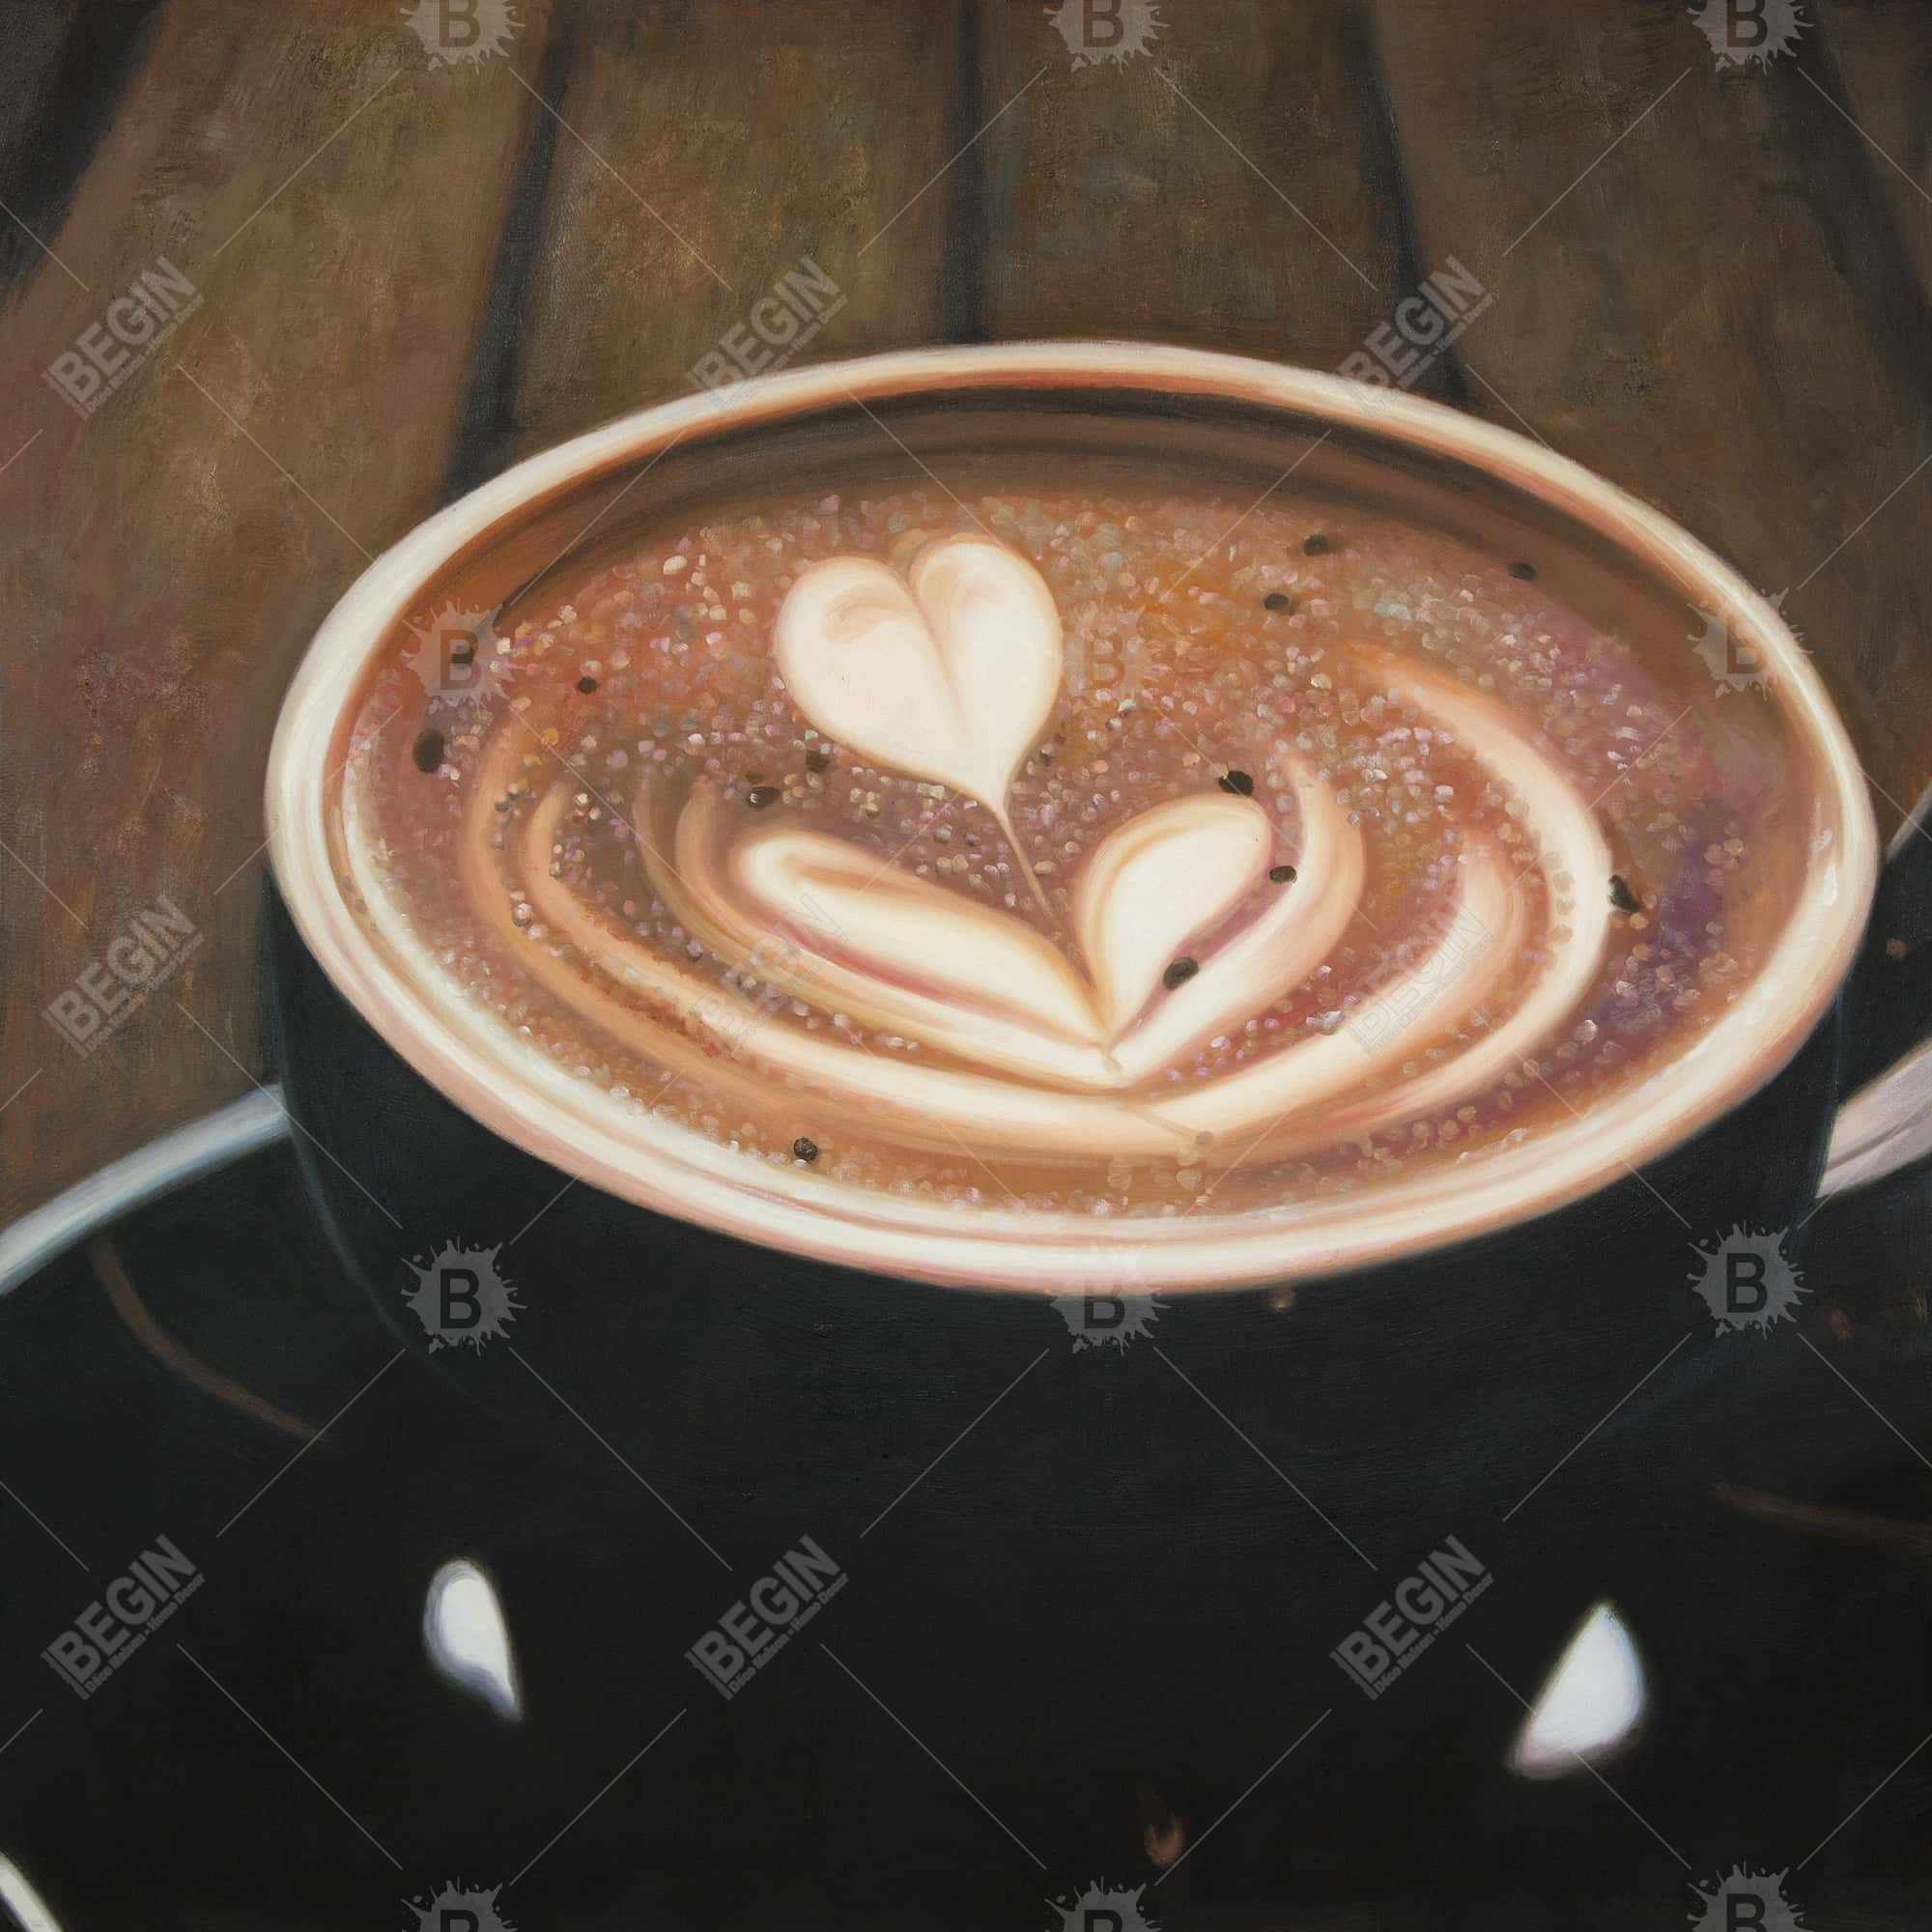 Artistic cappuccino